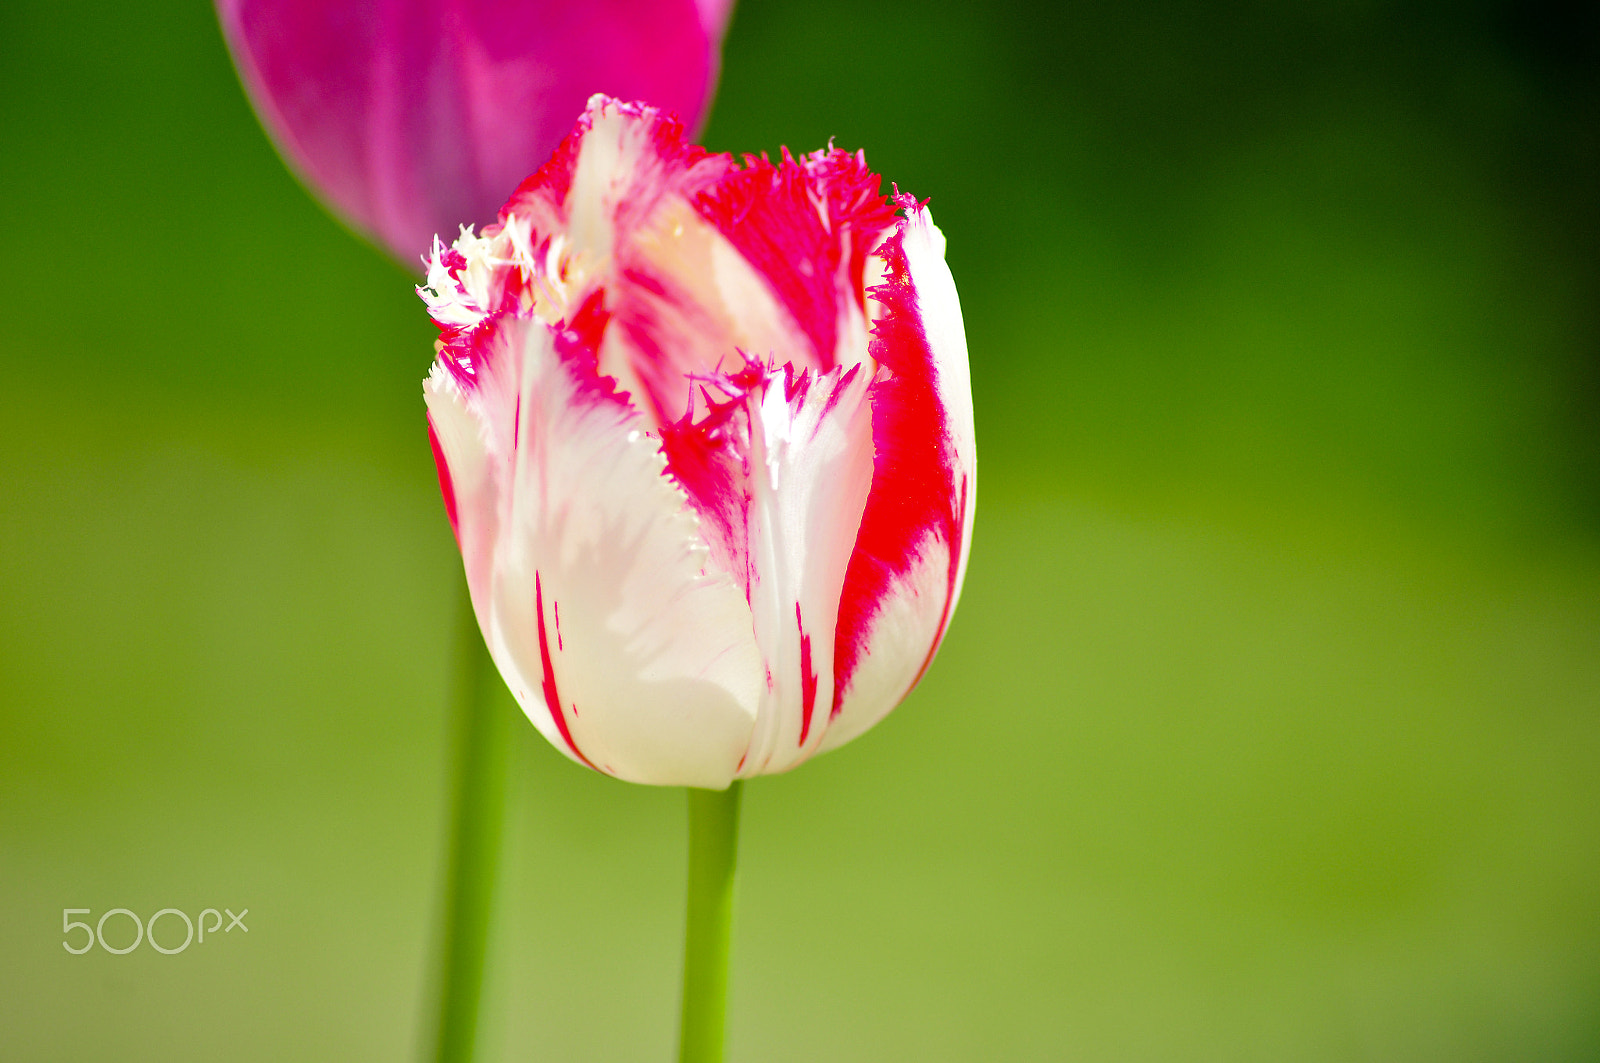 Nikon D90 sample photo. Beautiful tulip photography